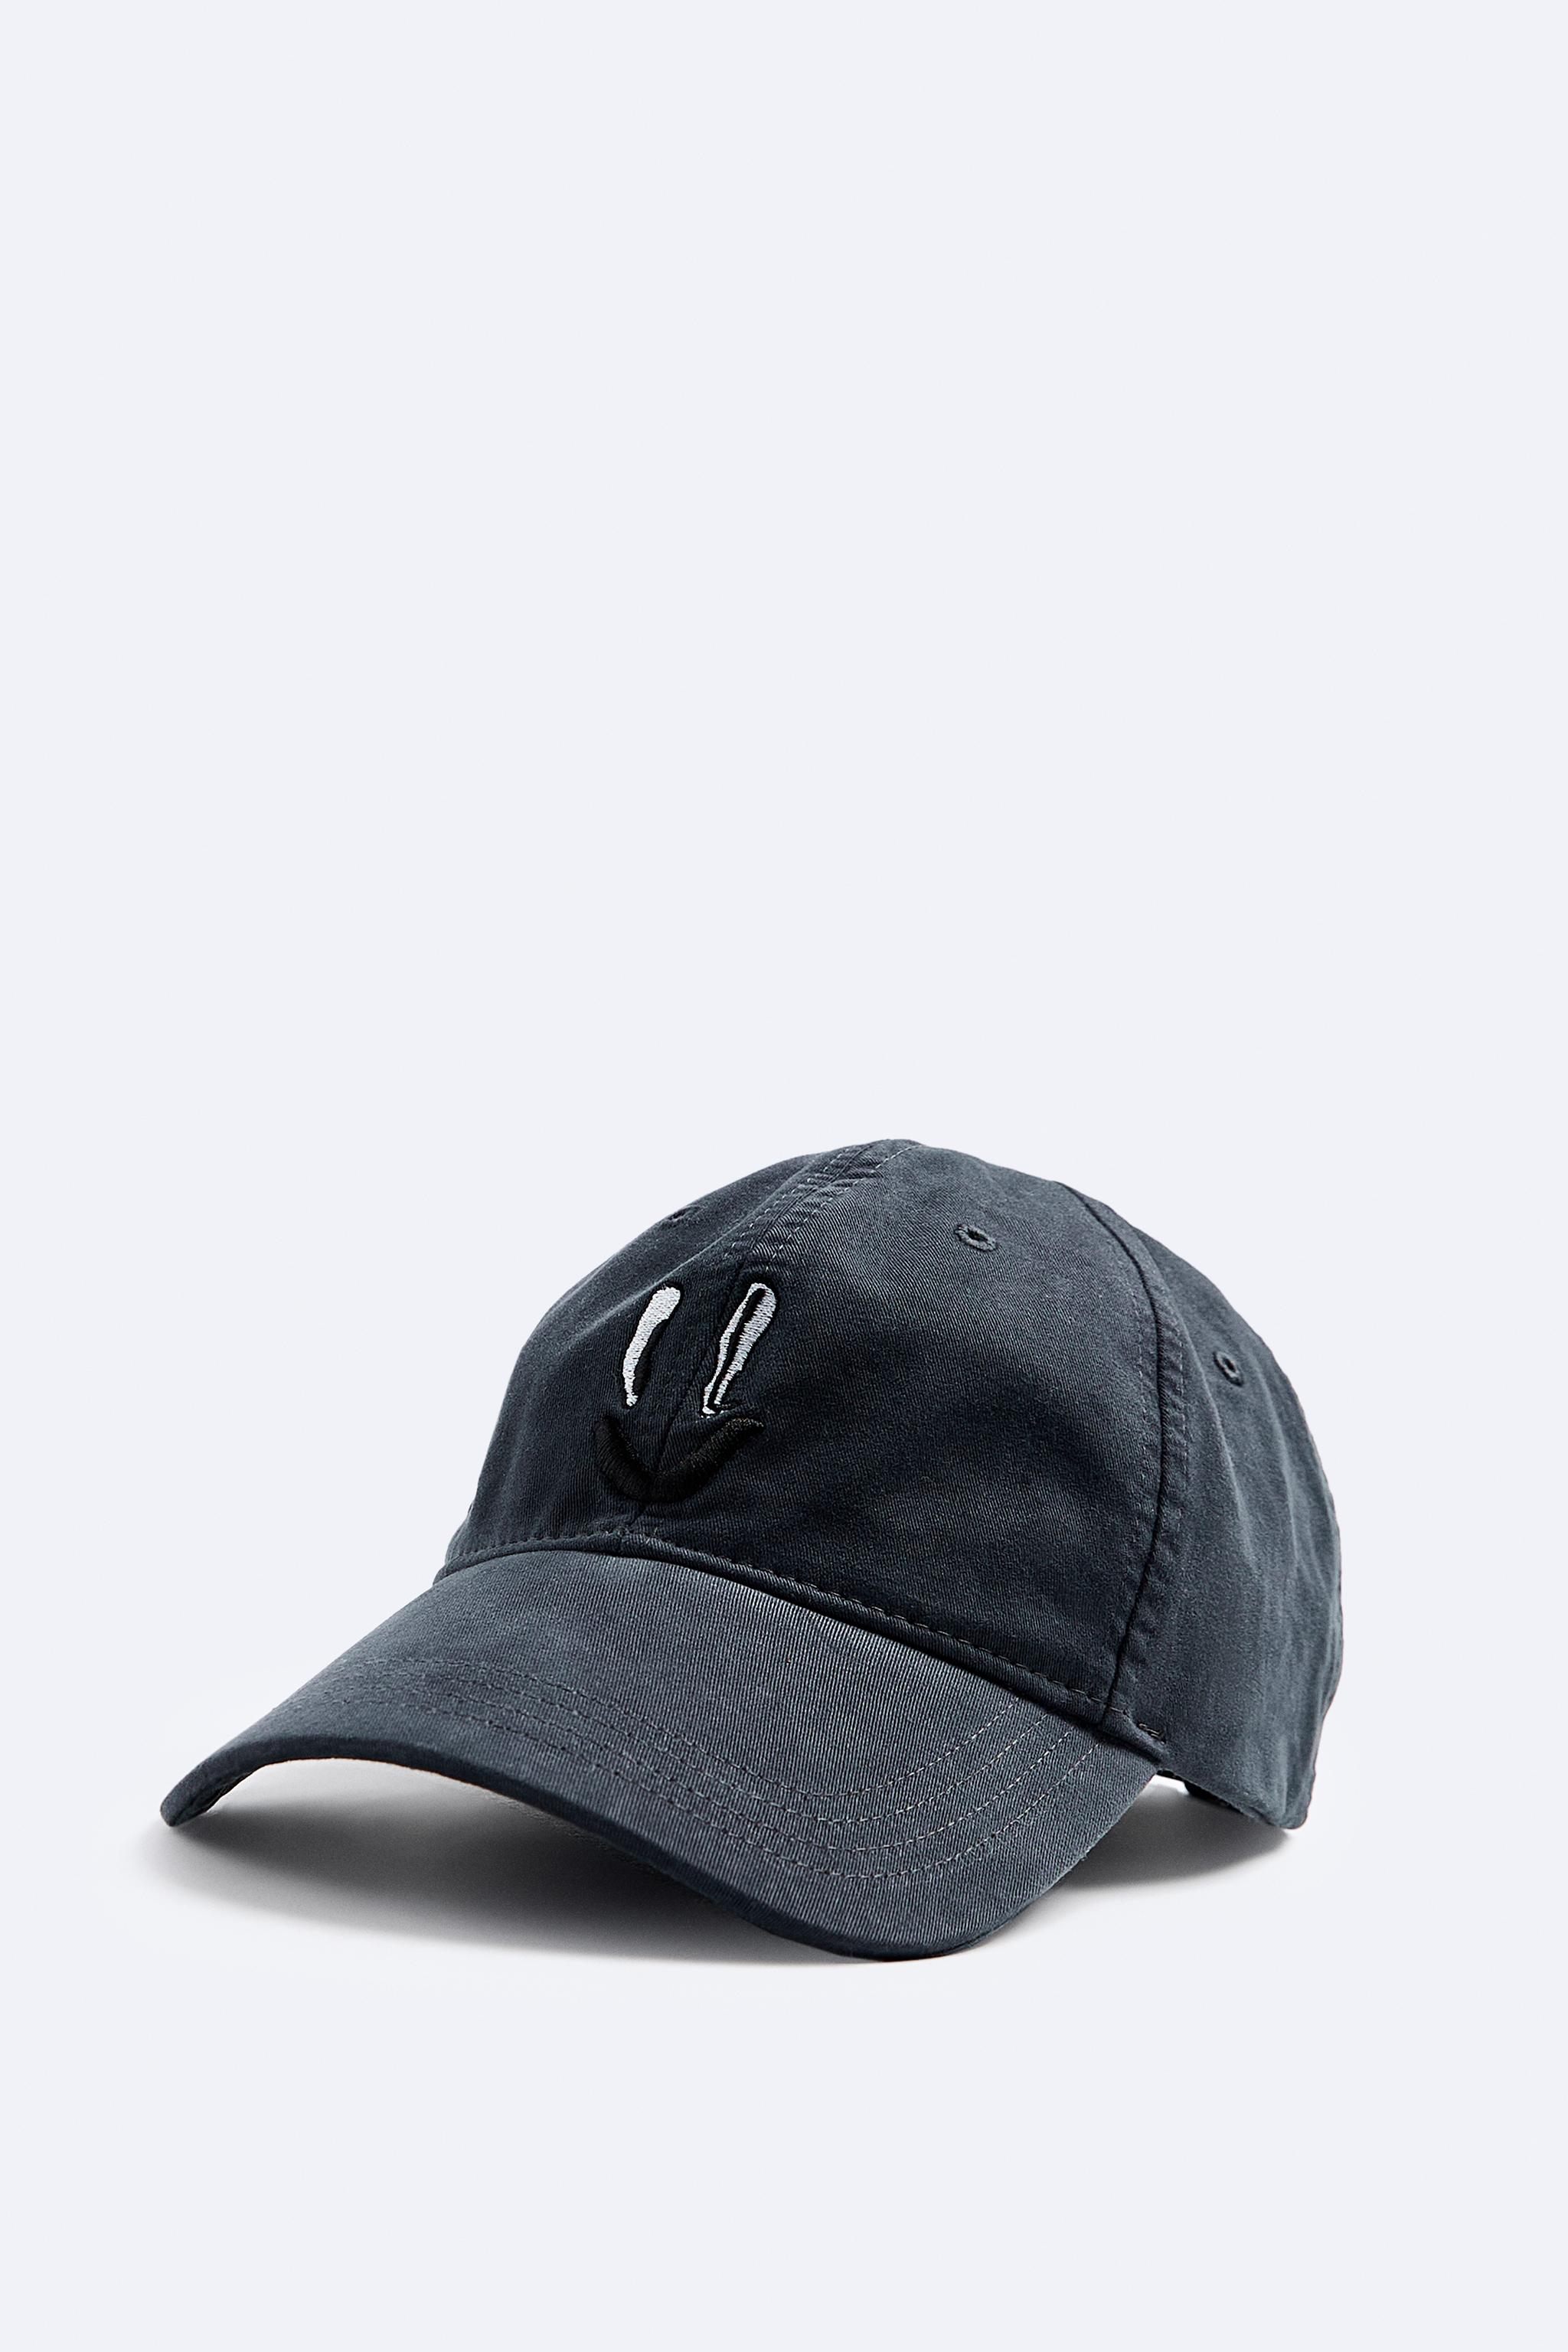 帽子 & キャップ | メンズ | 最新コレクション | ZARA 日本